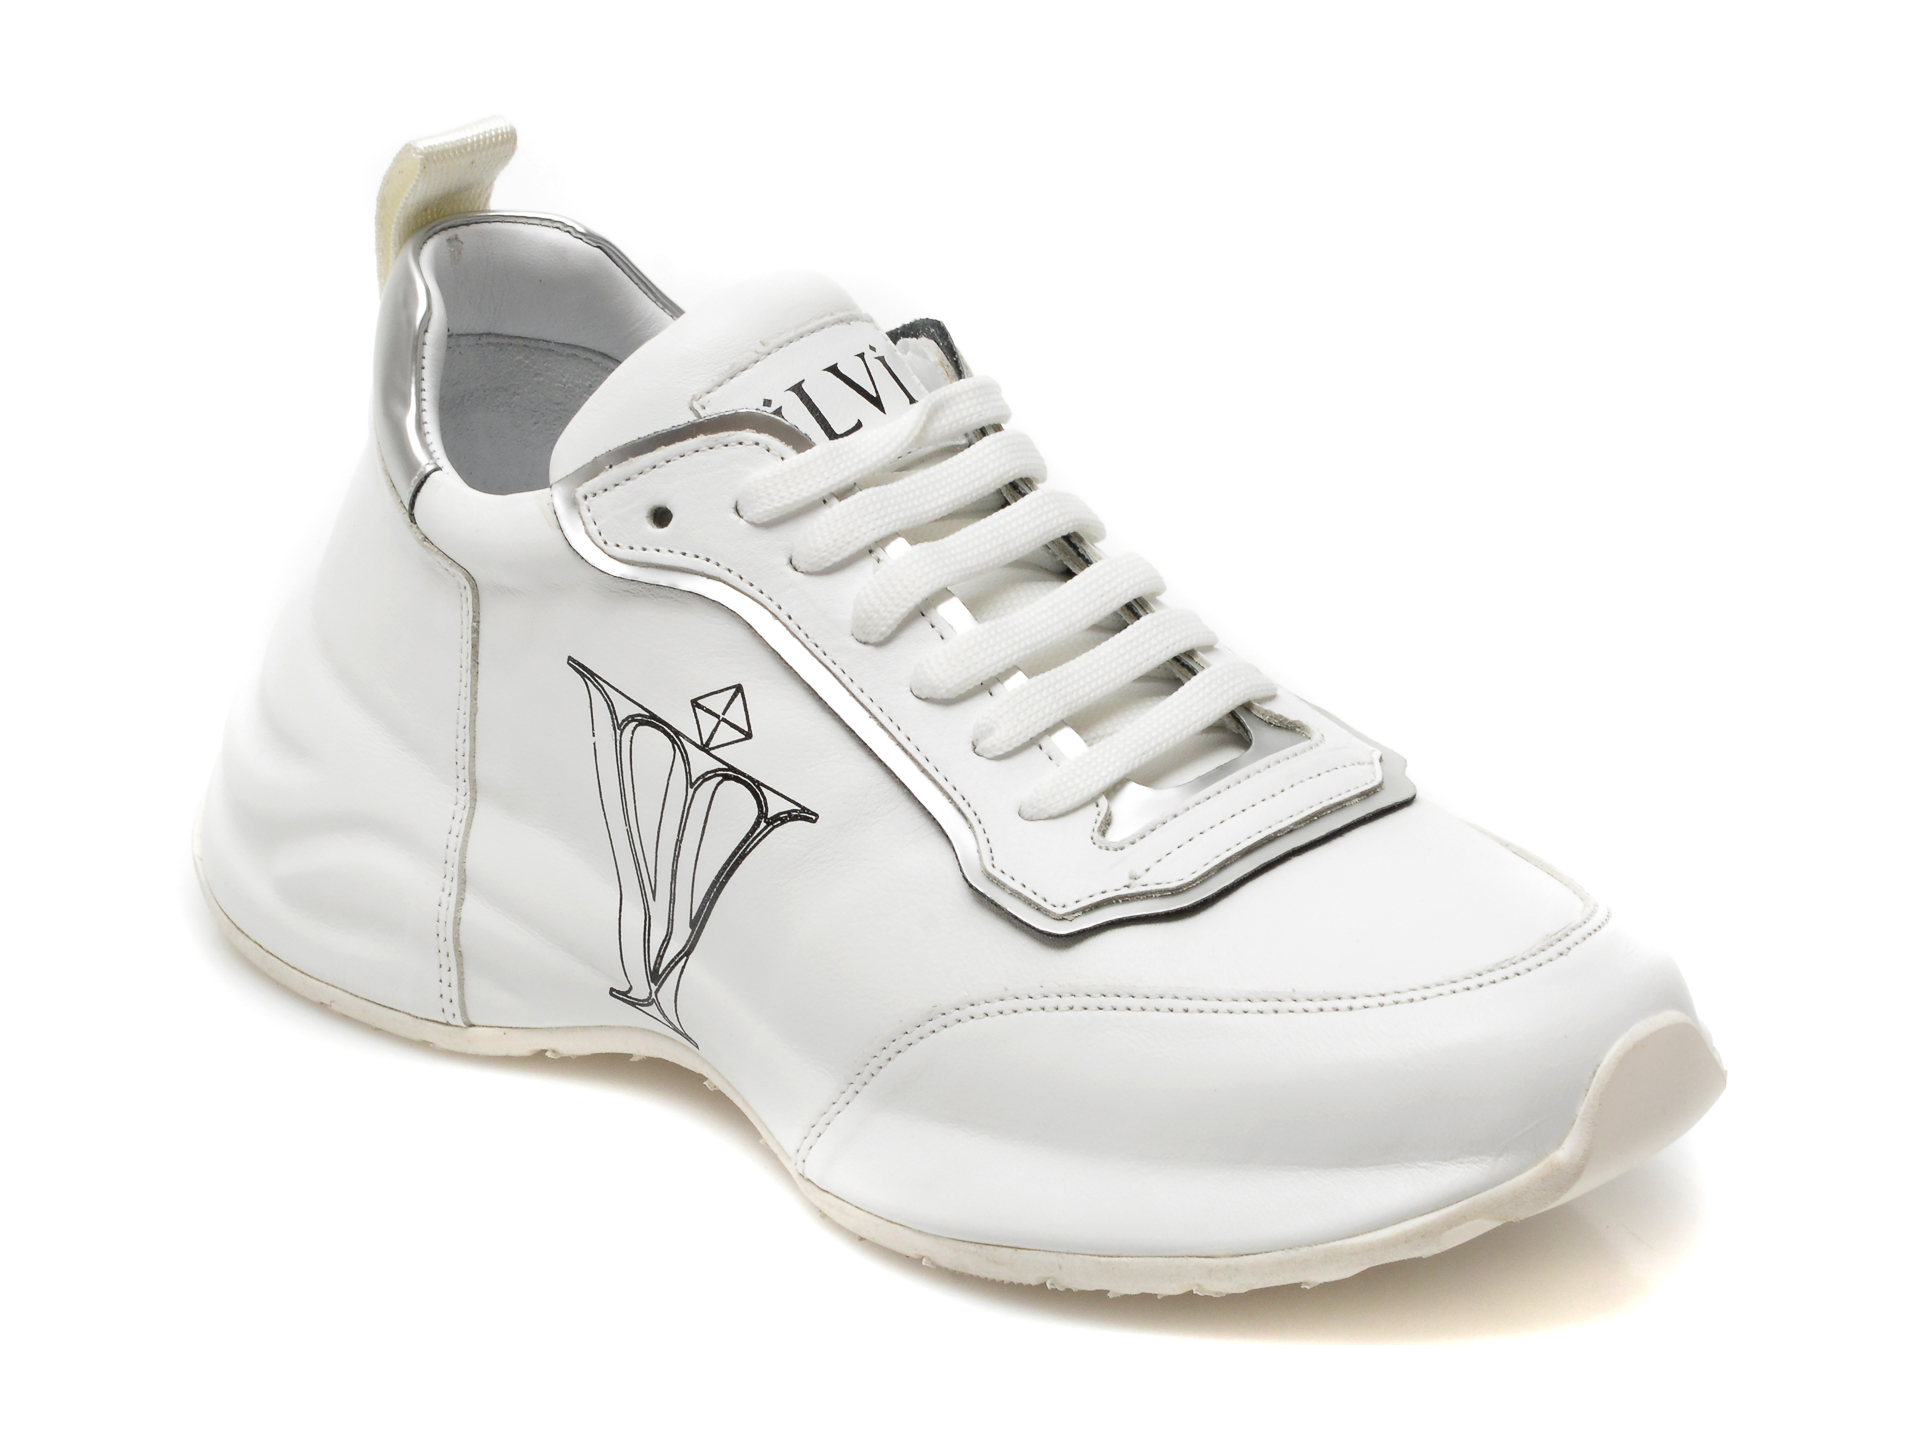 Pantofi sport ILVI albi, 191, din piele naturala /femei/pantofi